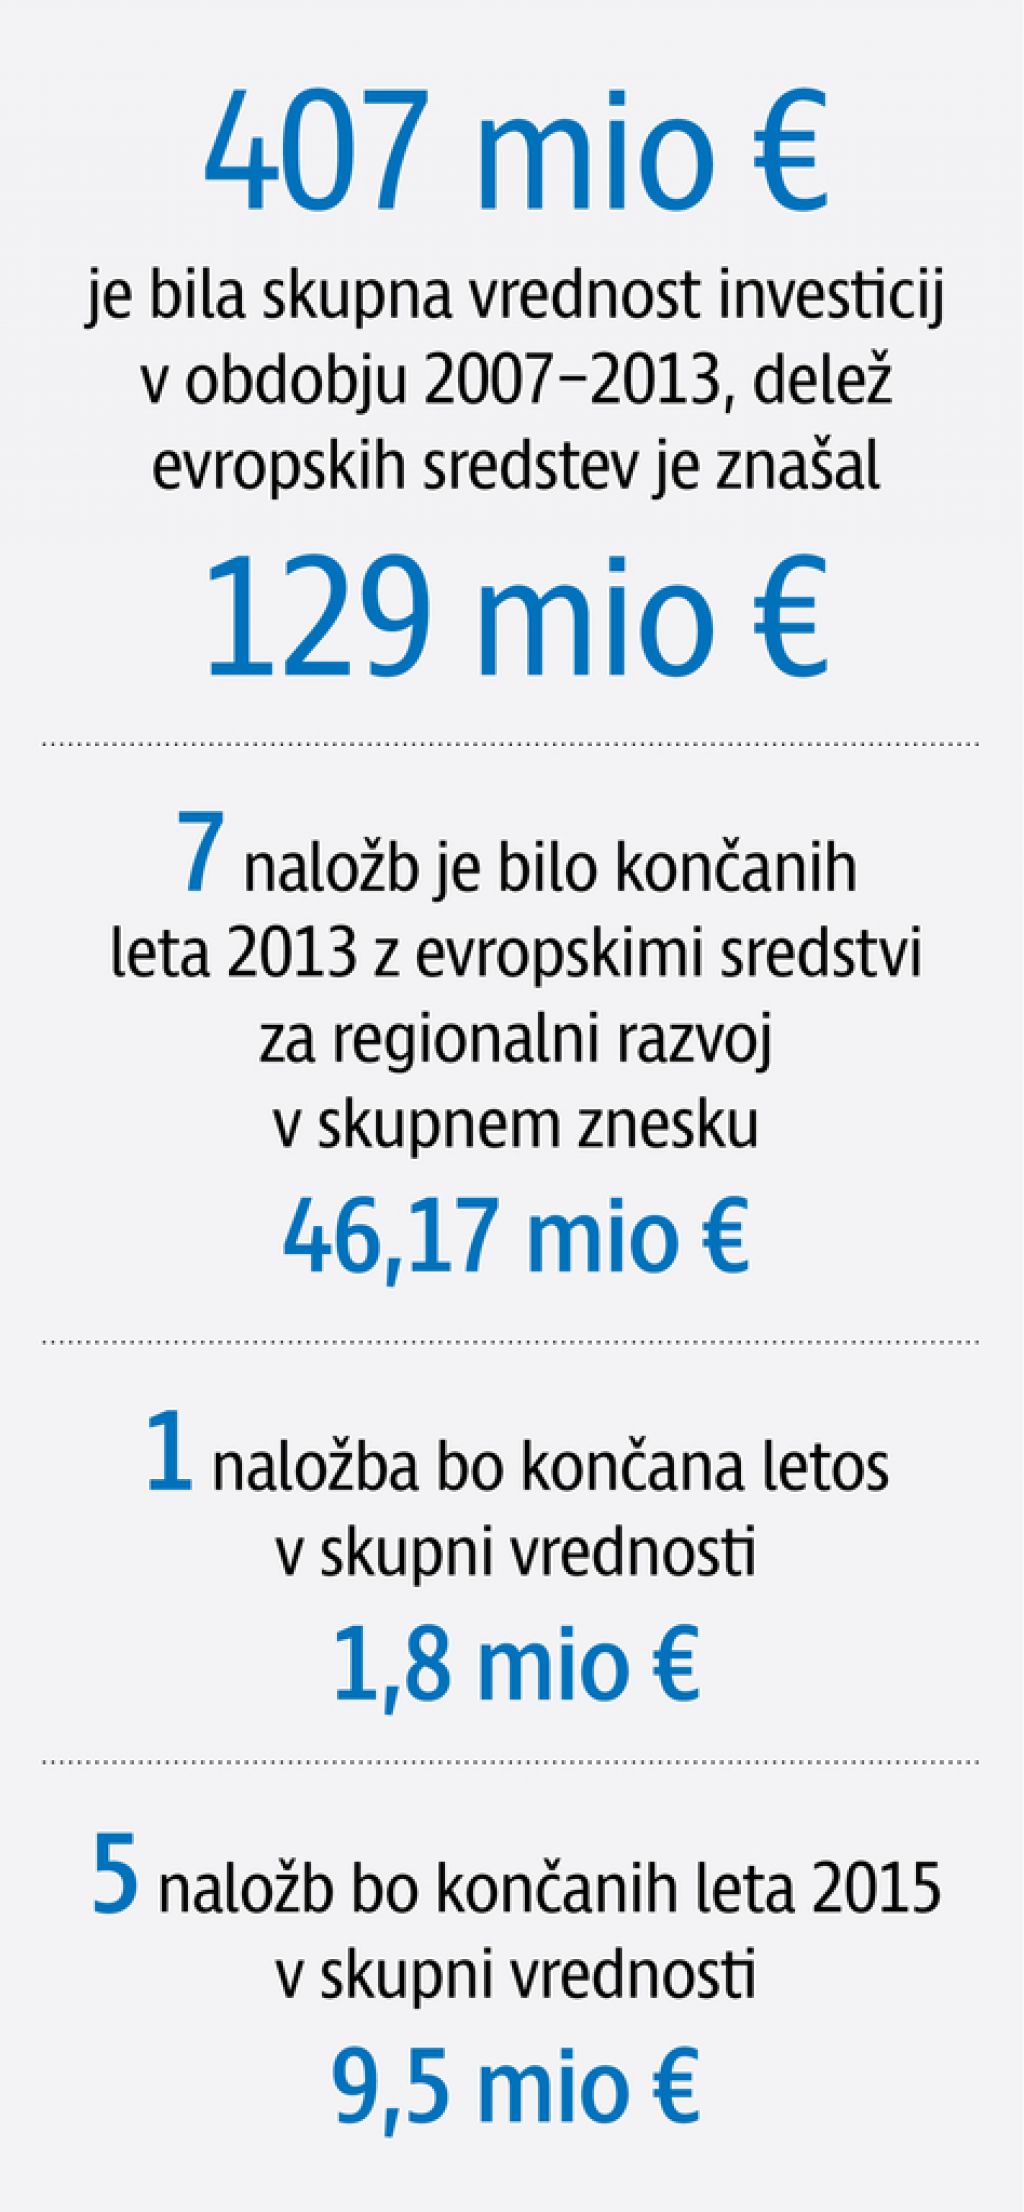 Hoteli LifeClass - največja letošnja naložba v slovenskem turizmu